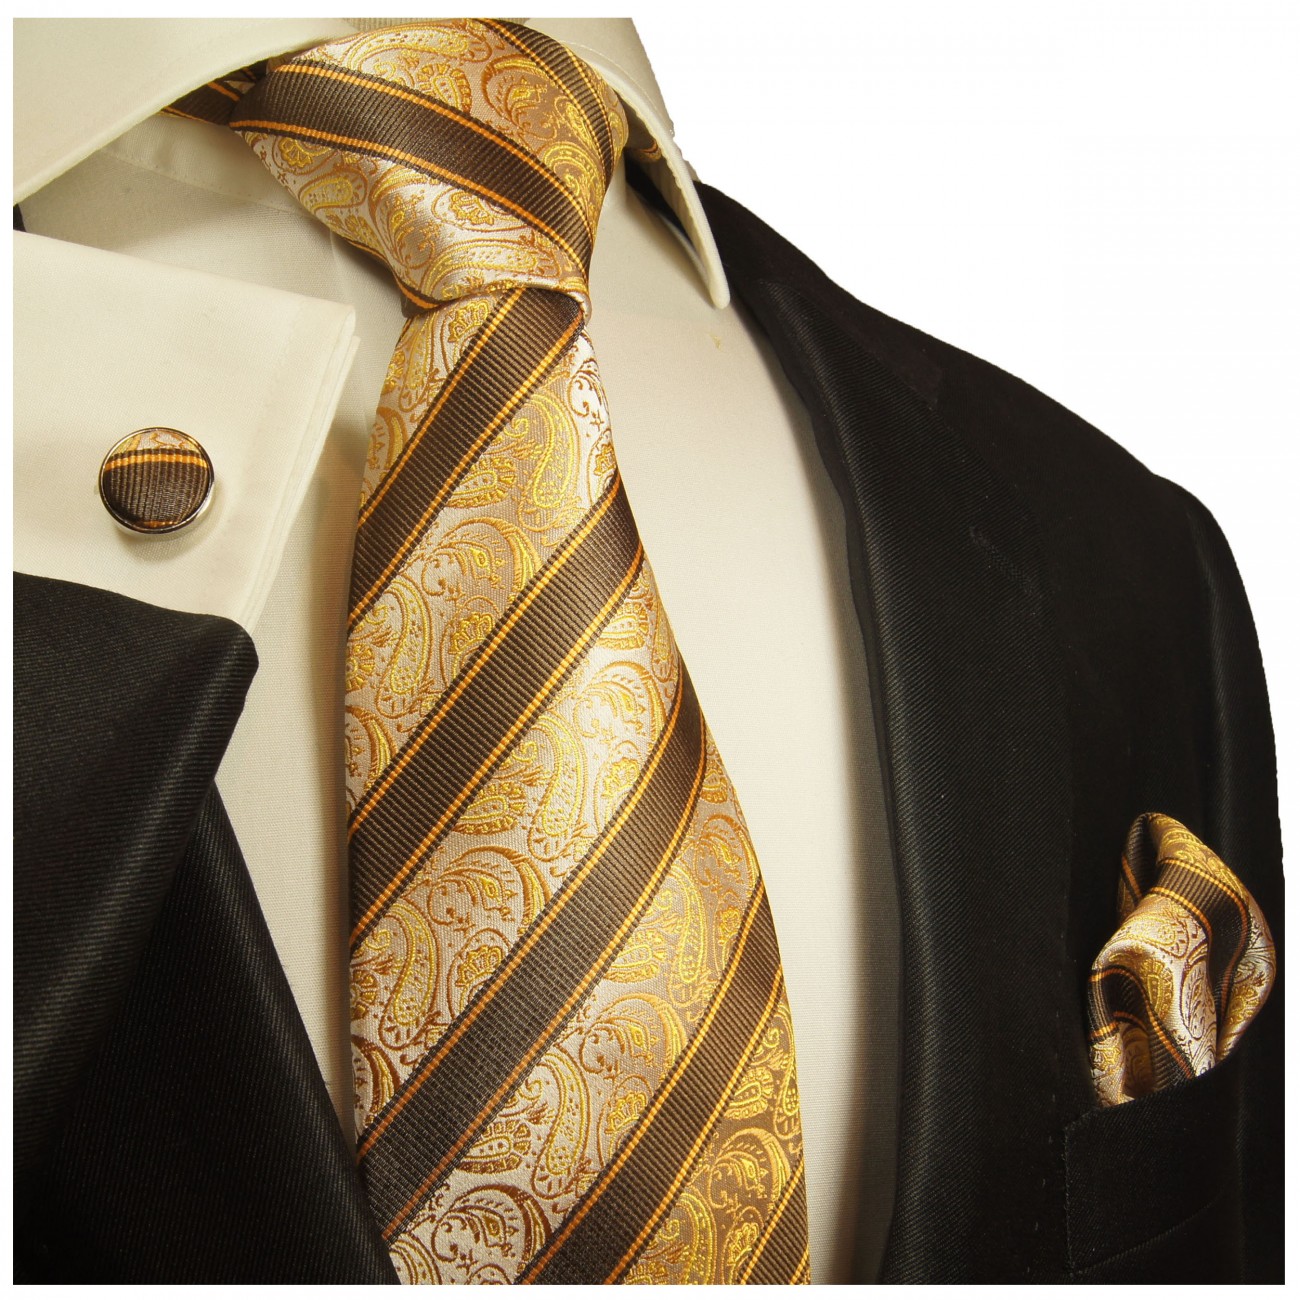 Krawatte braun paisley gestreift mit Einstecktuch und Manschettenknöpfe